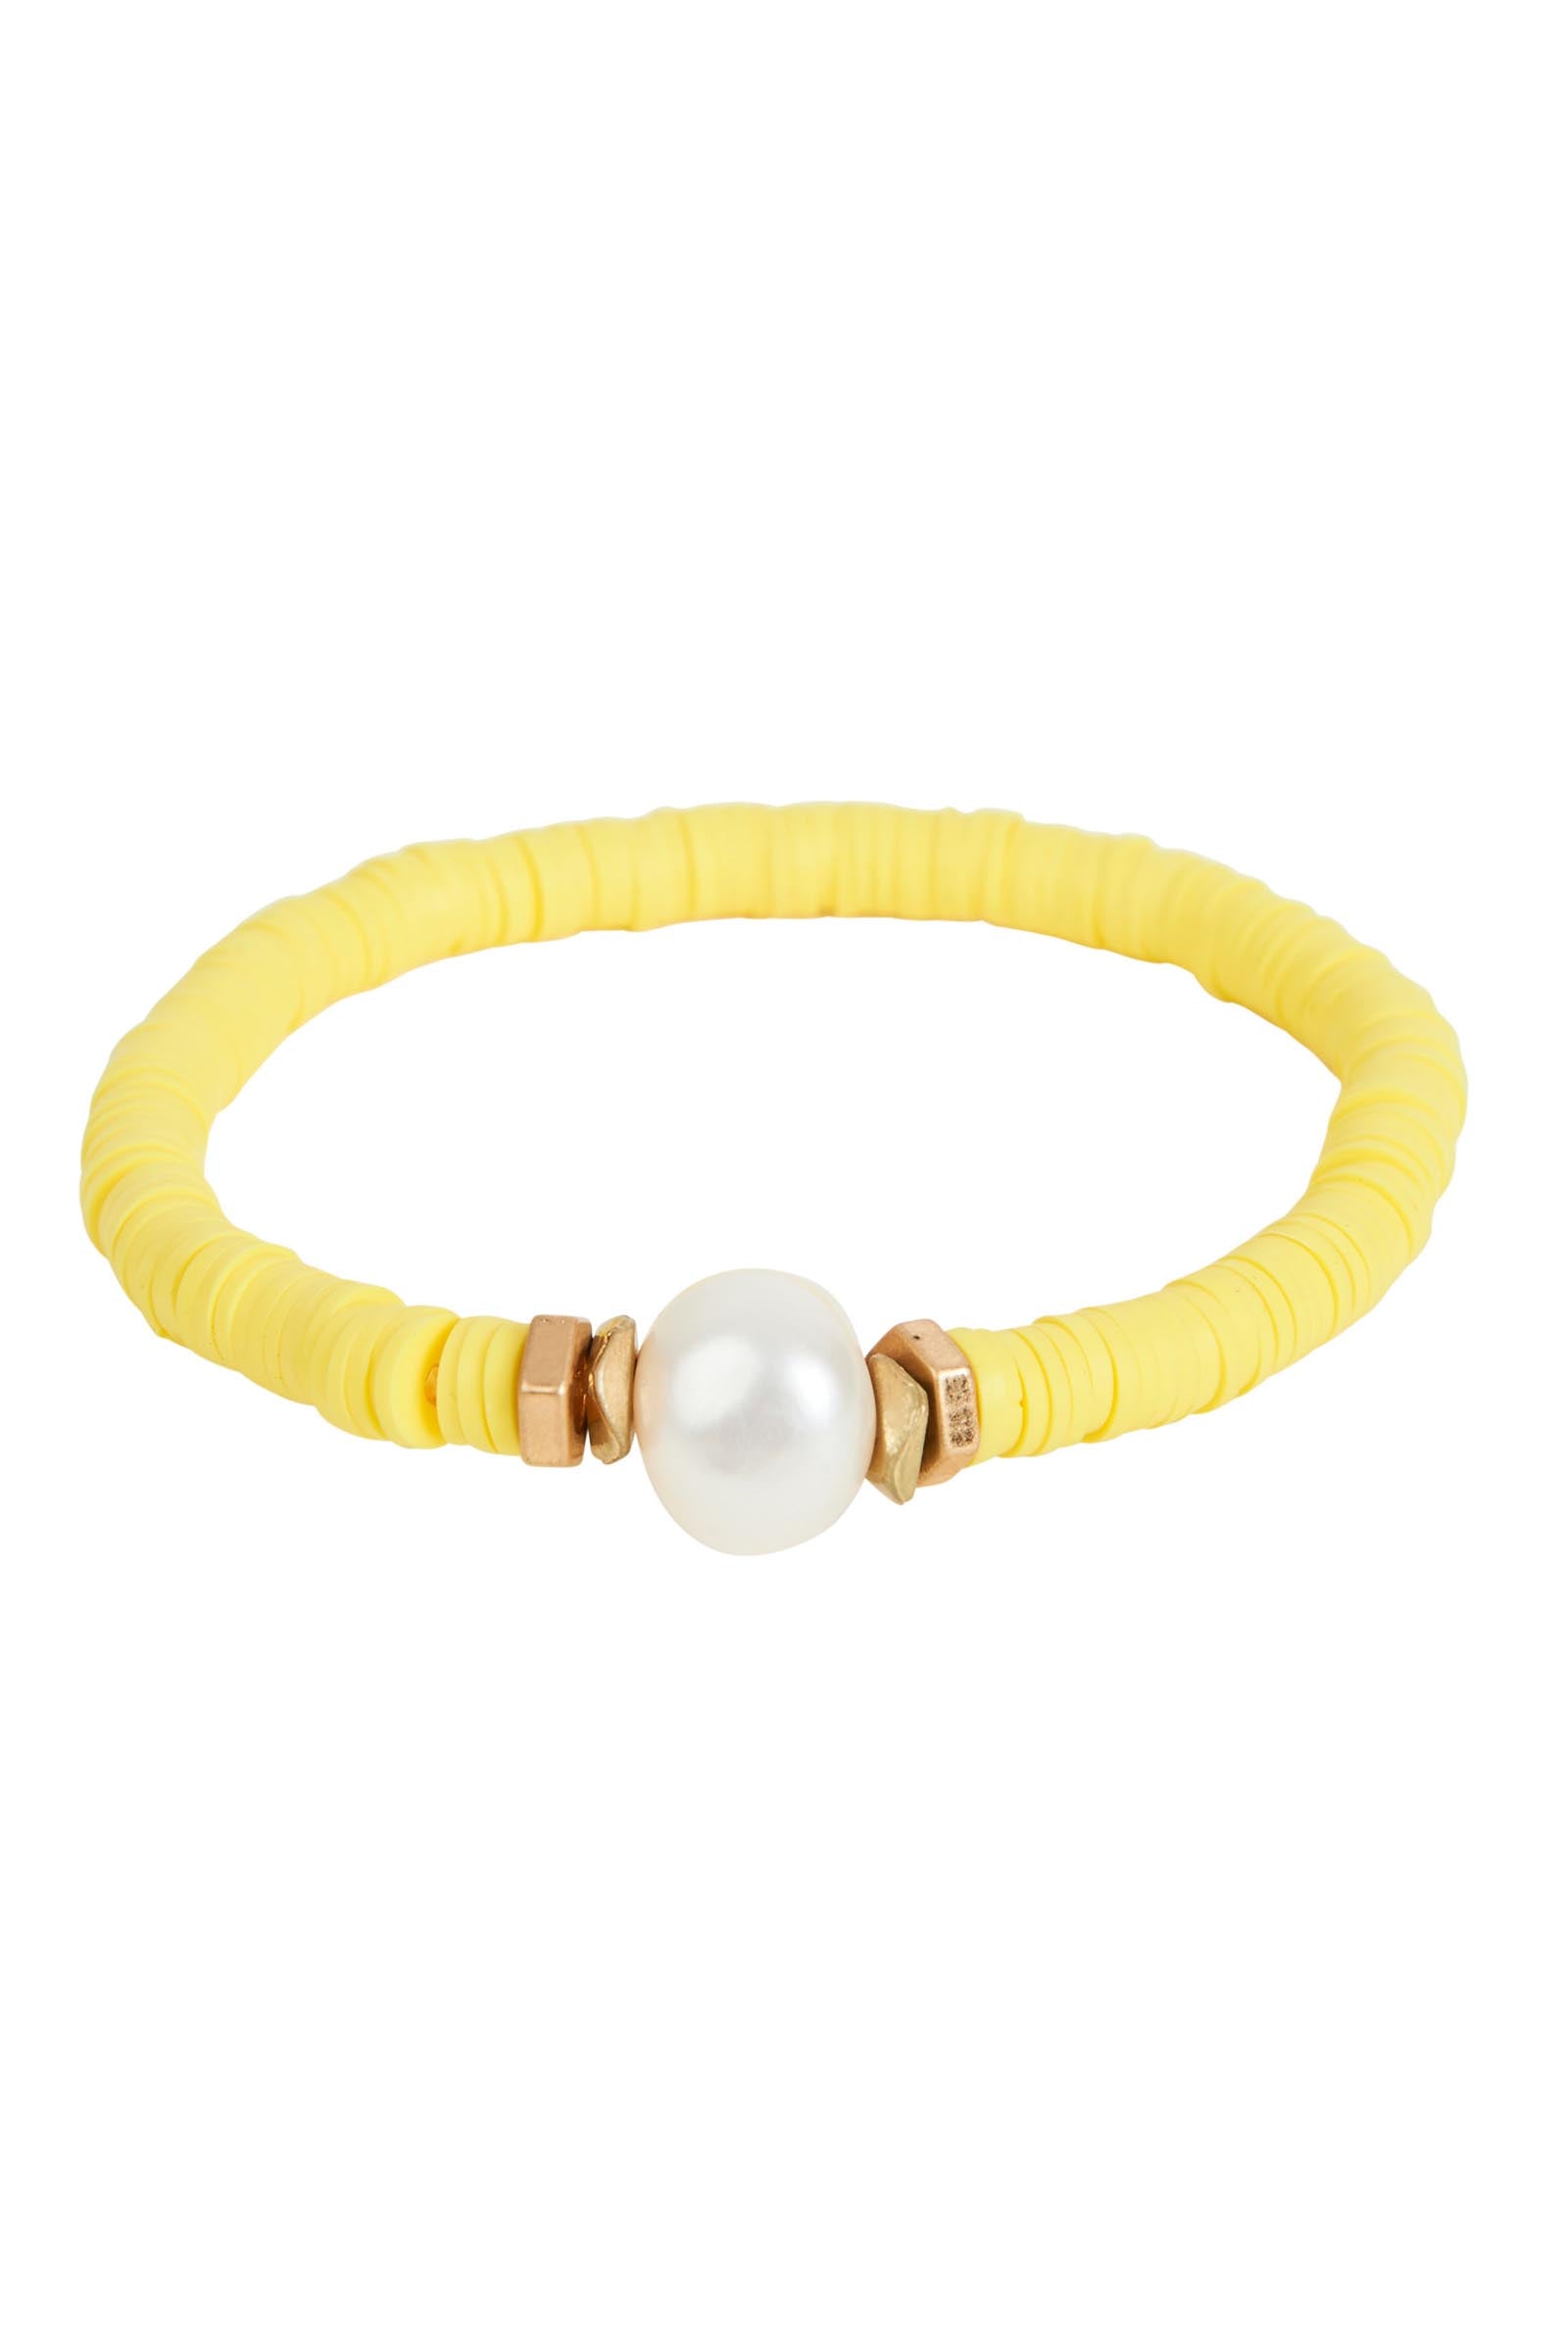 Casa Blanca Bracelet - Honeycomb - eb&ive Bracelet